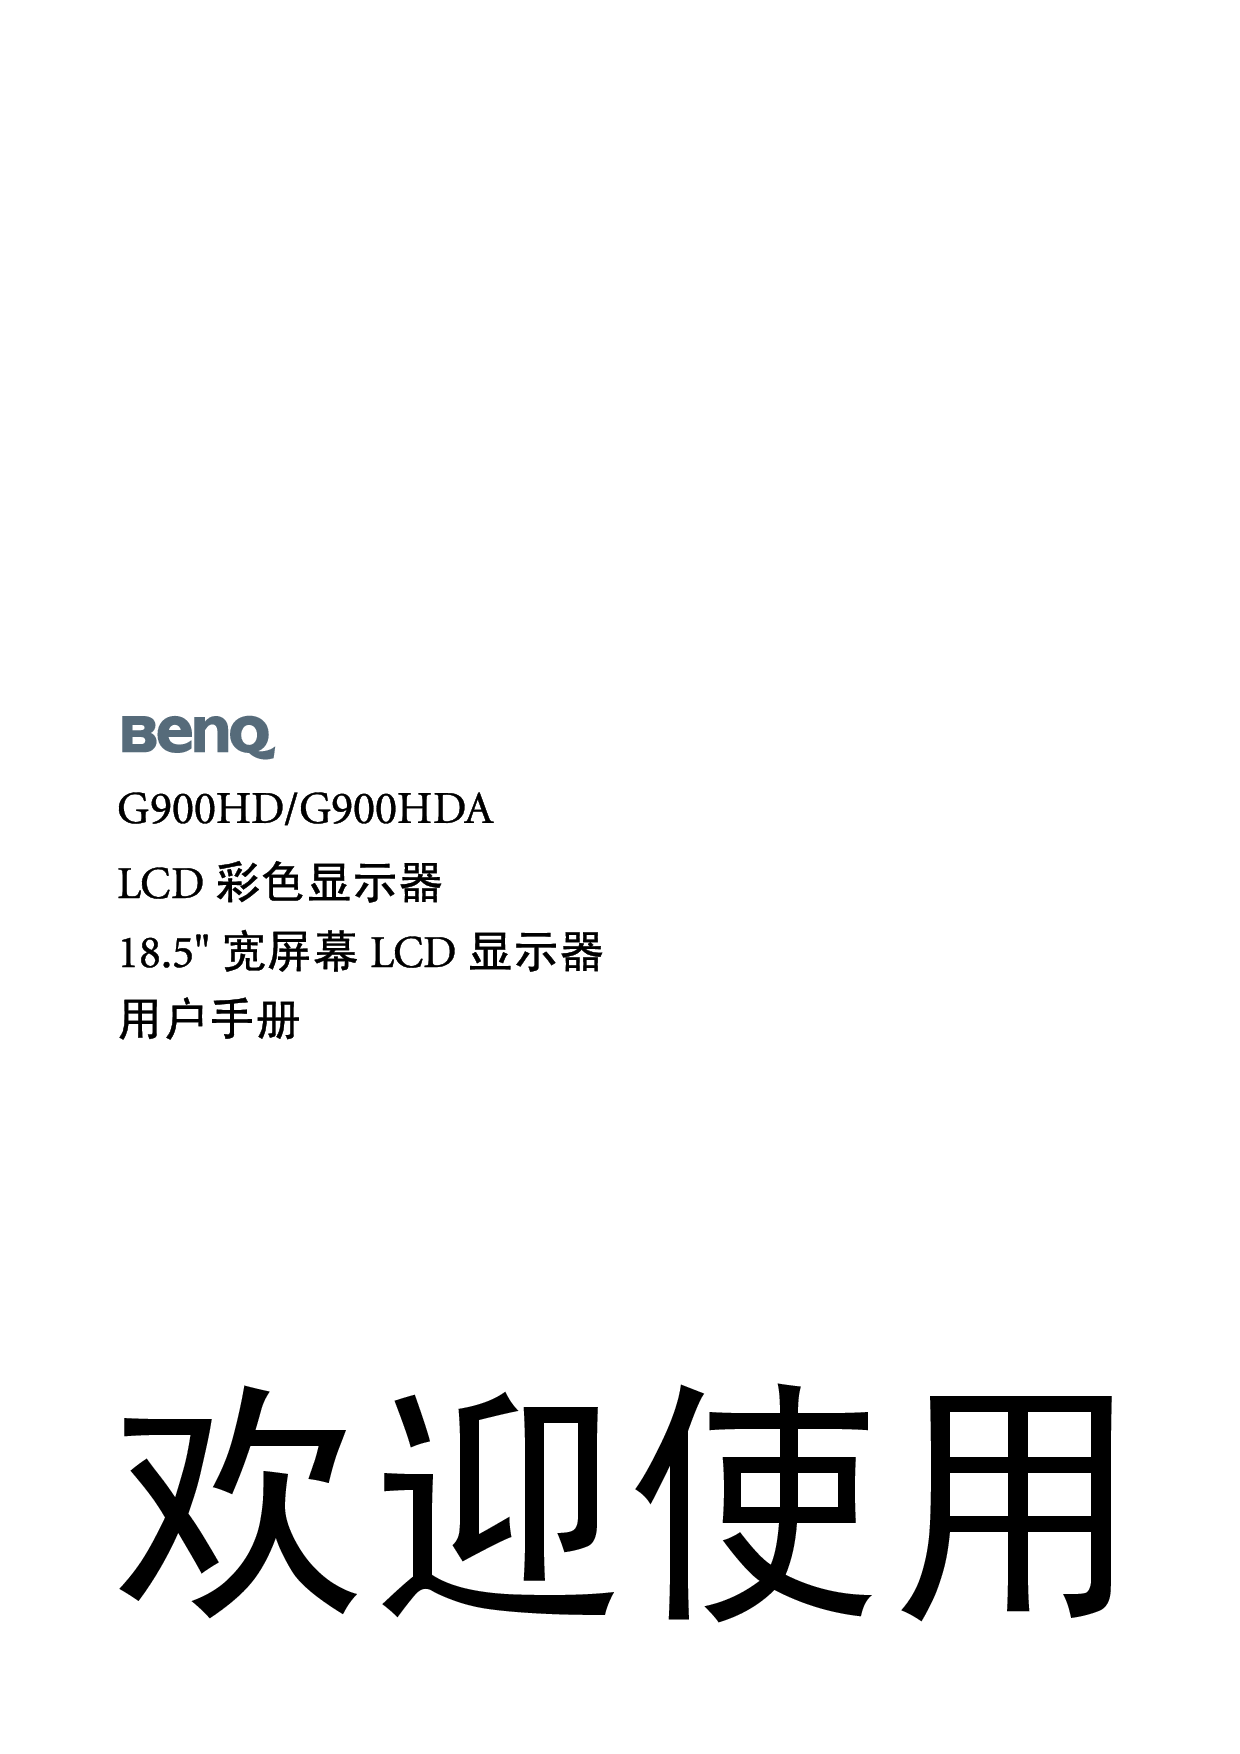 明基 Benq G900HD 使用手册 封面